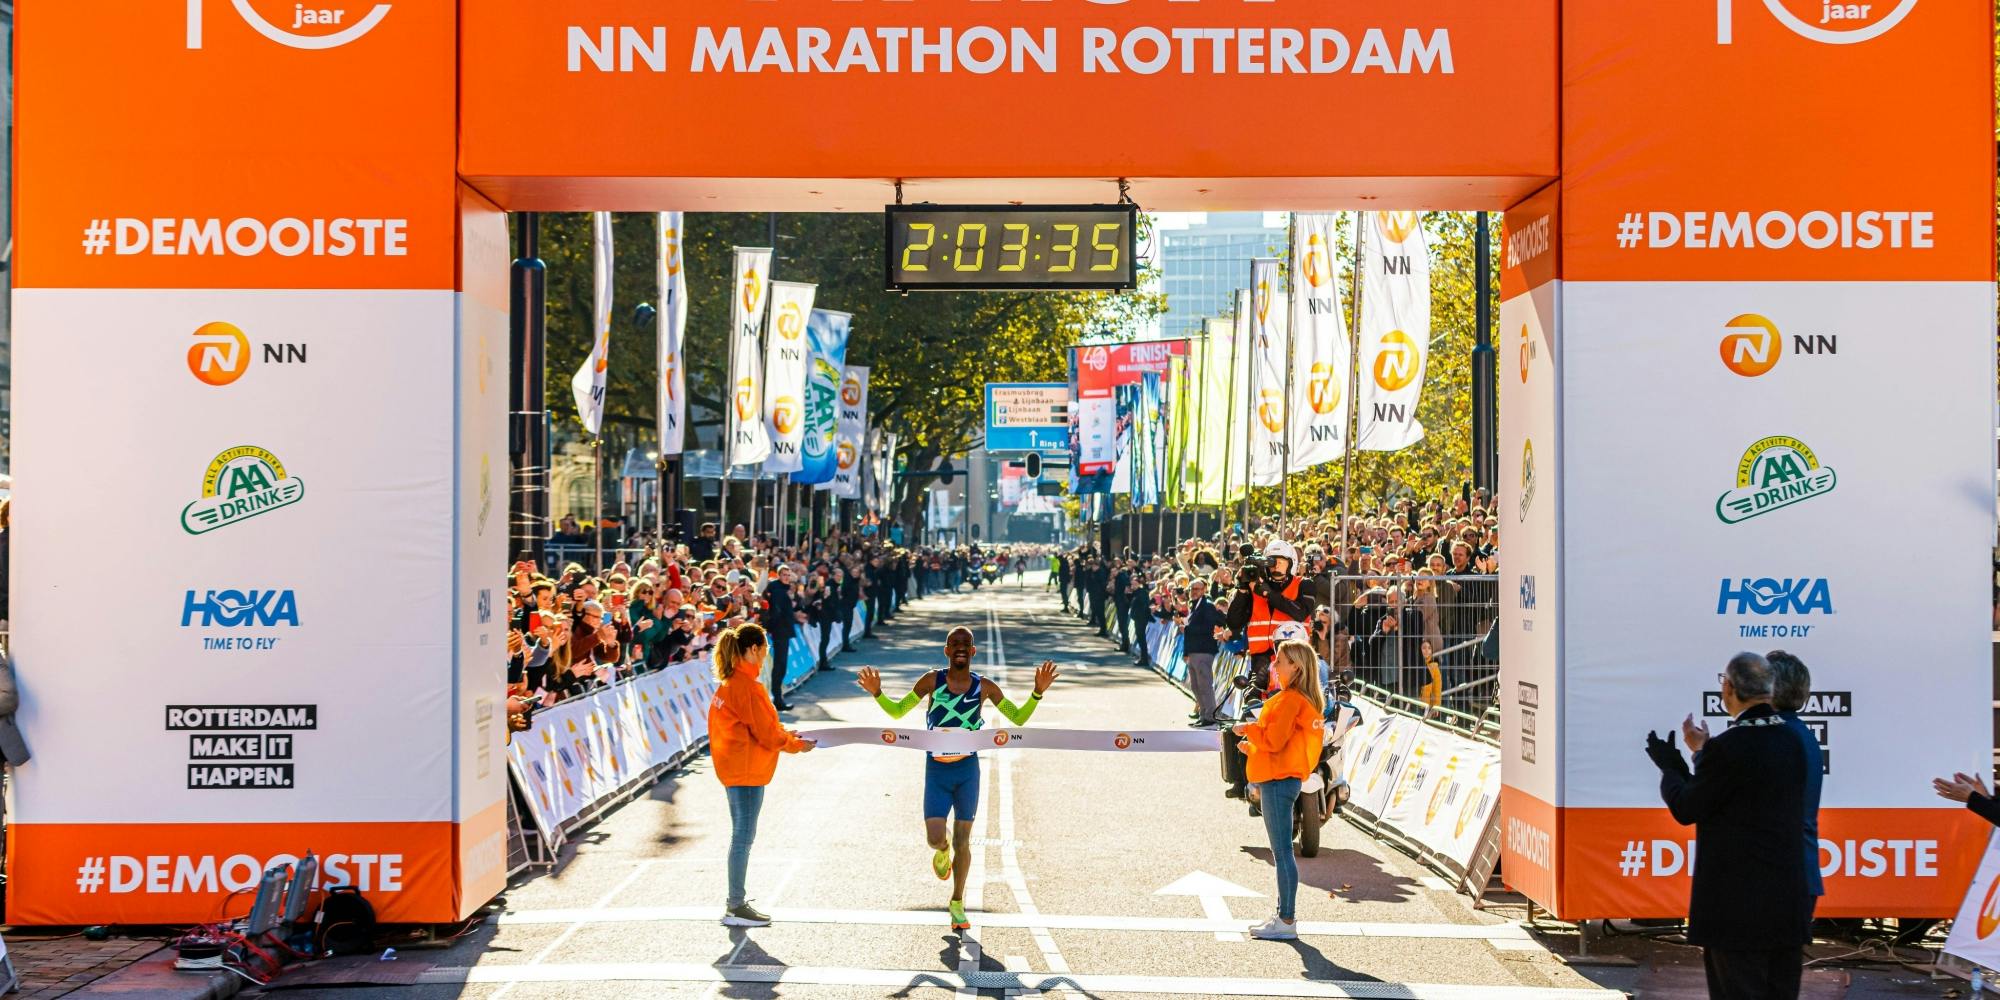 Απίθανος Abdi: Νέο Ευρωπαϊκό ρεκόρ σε μαραθώνιο με 2:03:36 στο Ρότερνταμ!